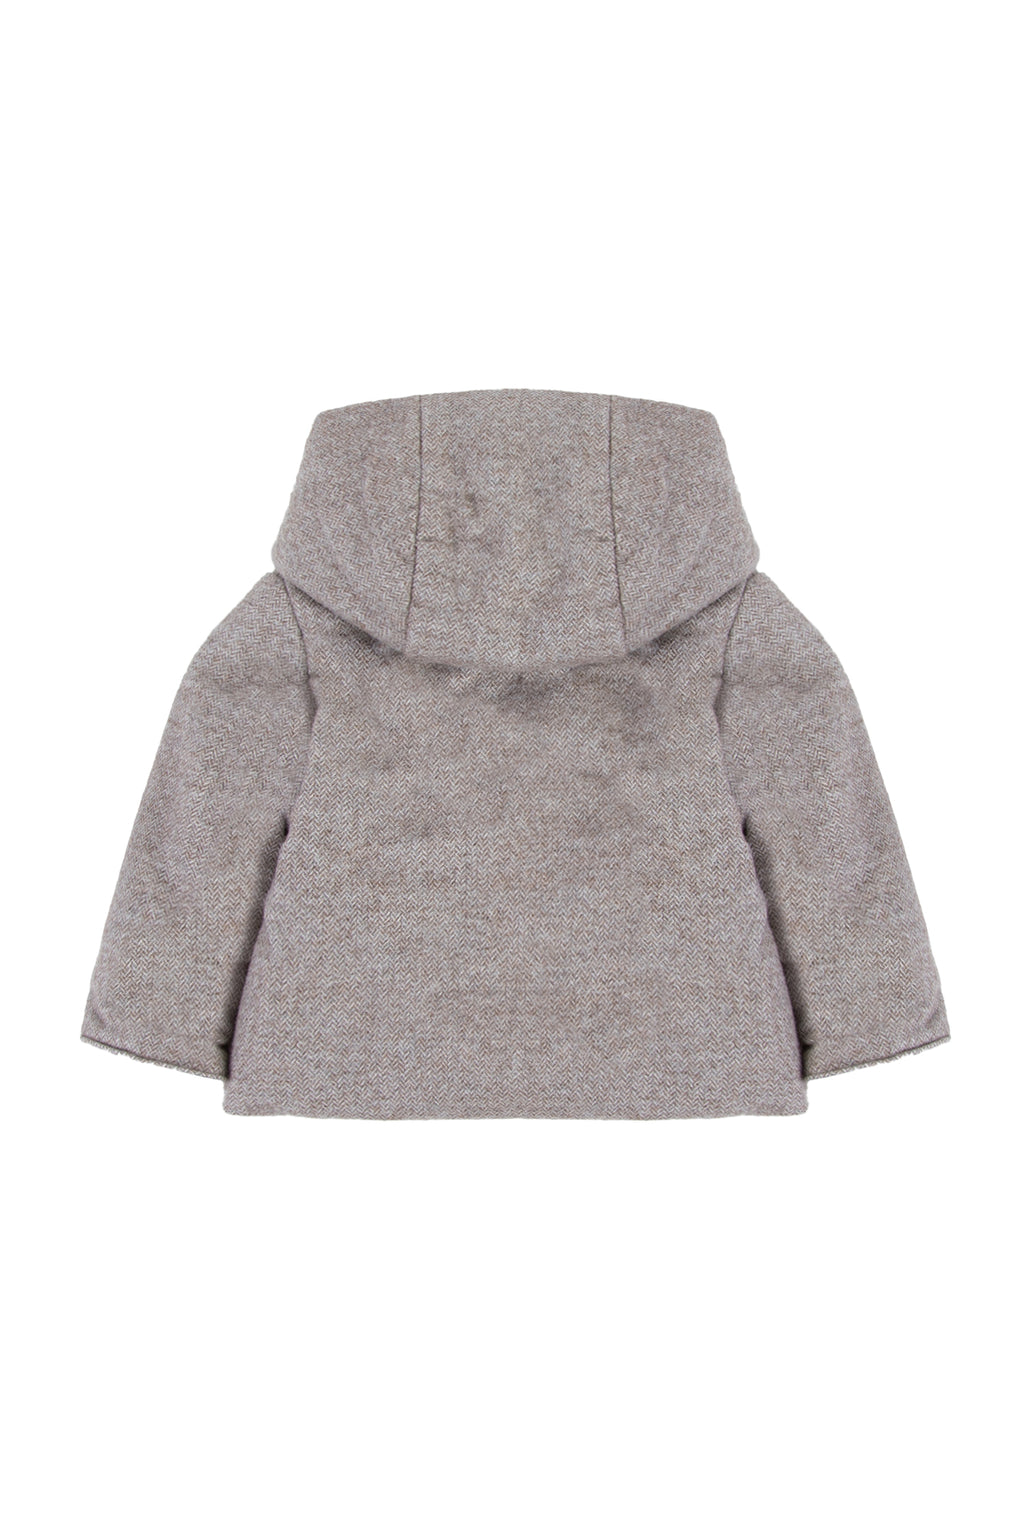 Coat - Beige cotton Hood